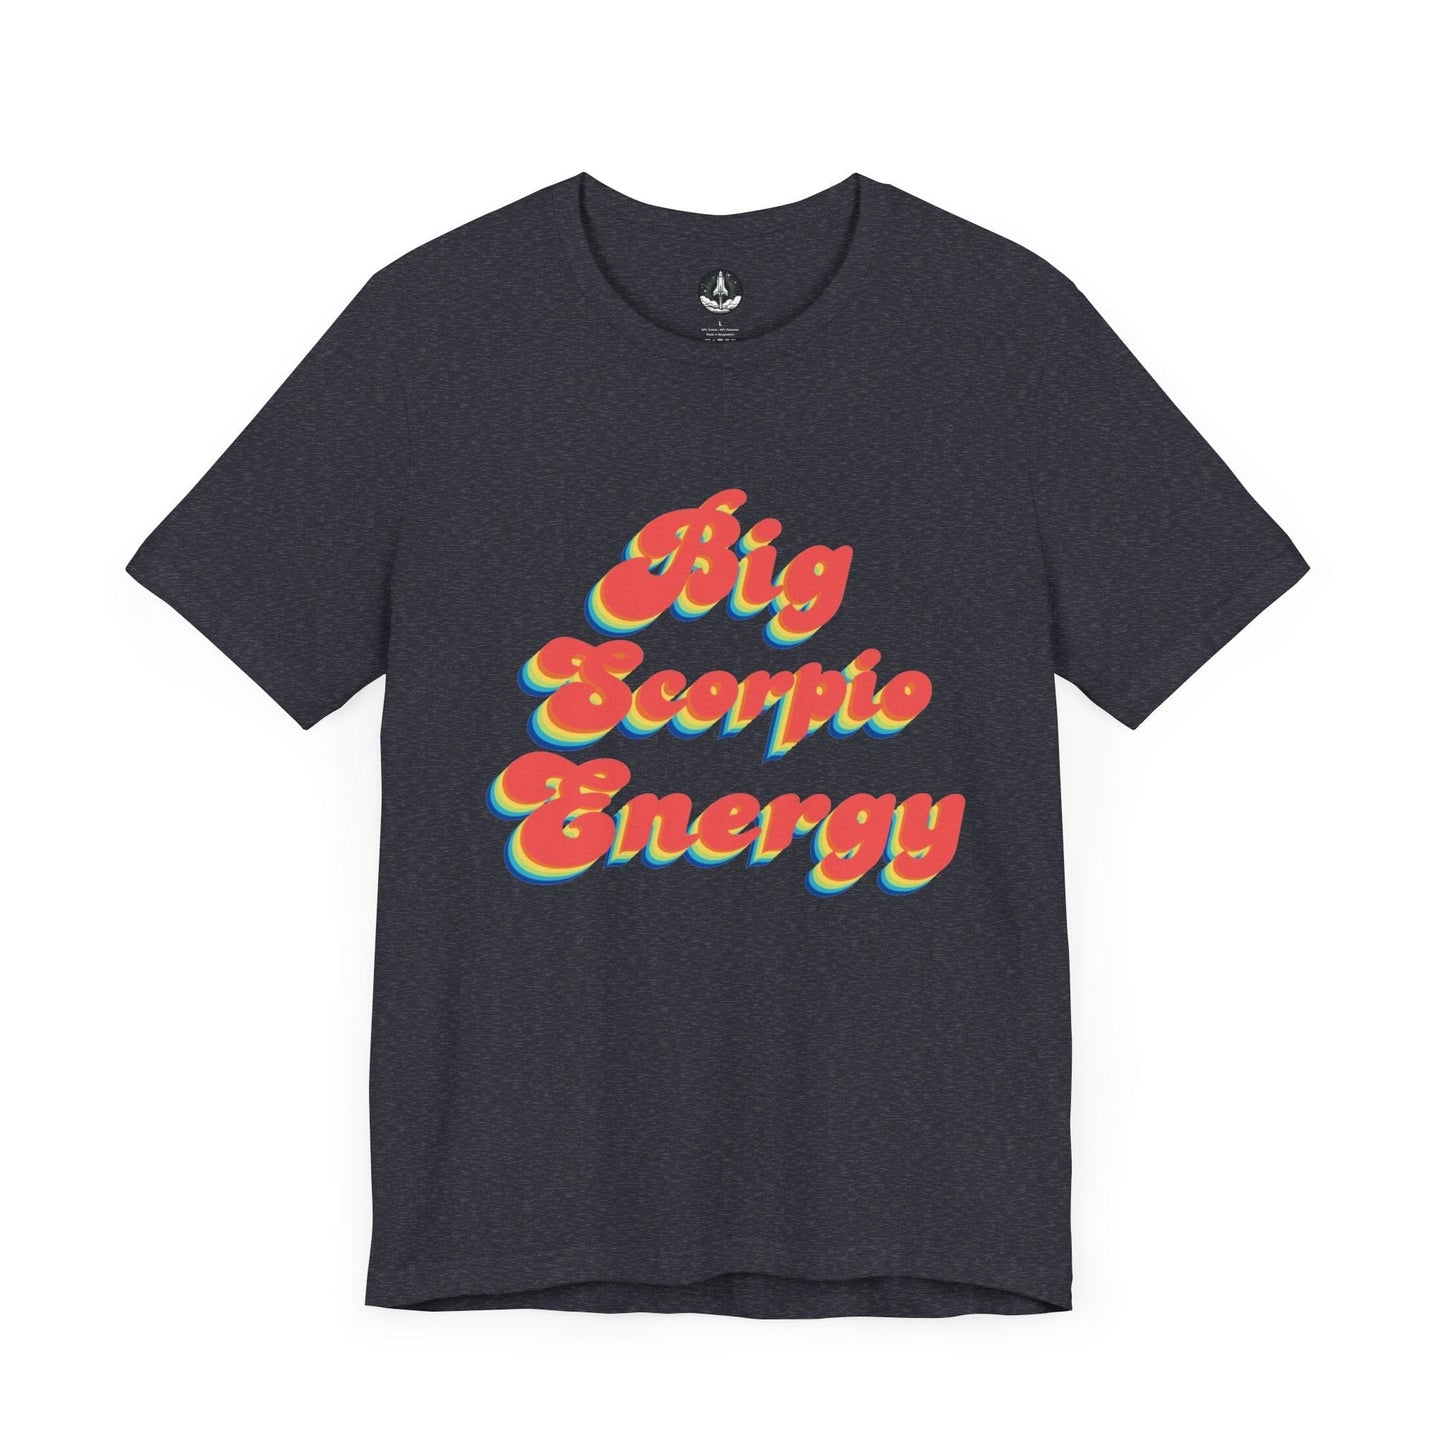 T-Shirt Heather Navy / S Big Scorpio Energy T-Shirt